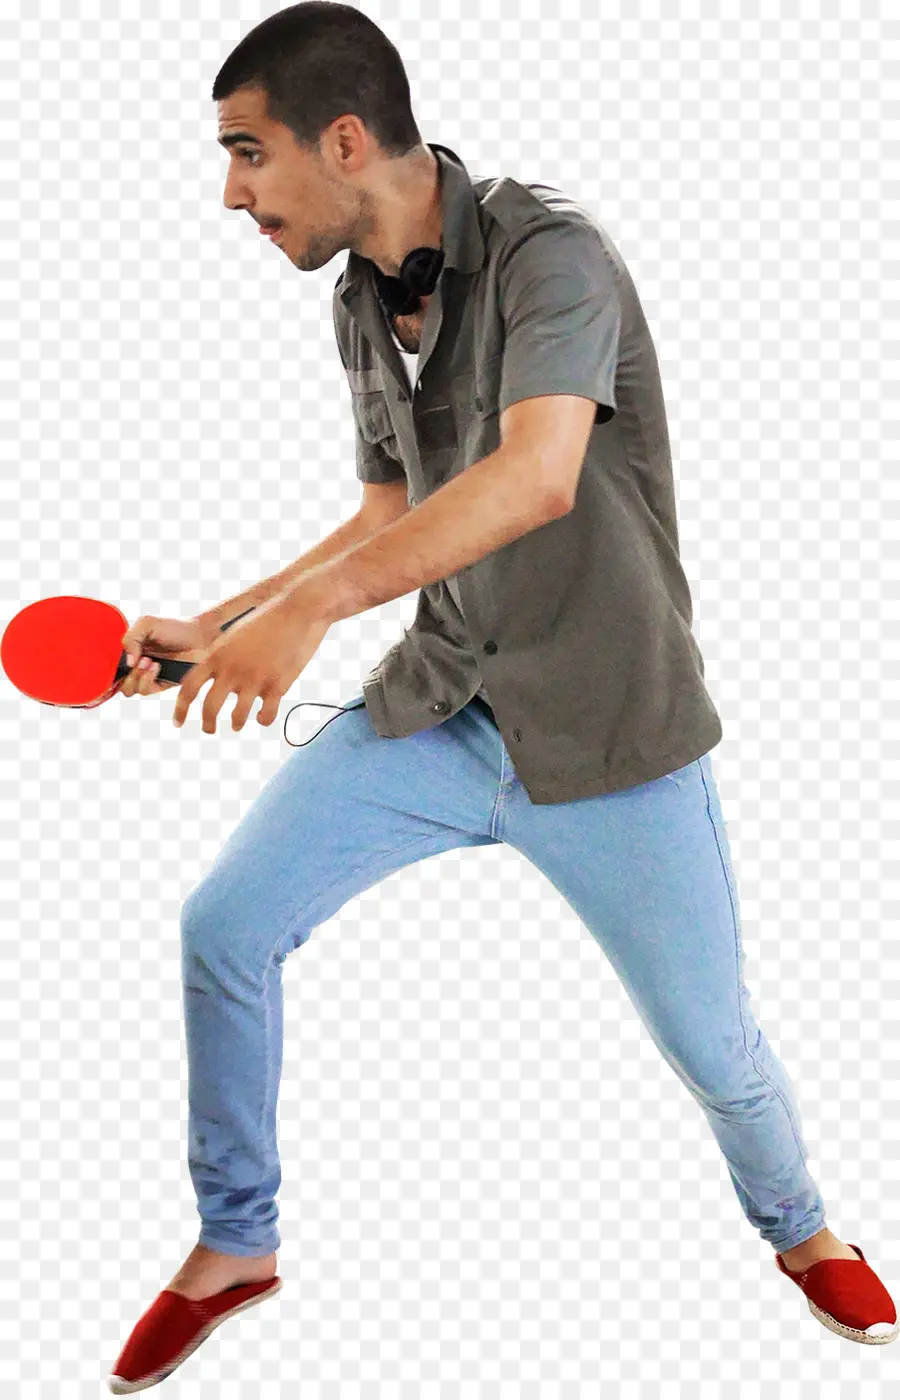 Apestar，Ping Pong PNG